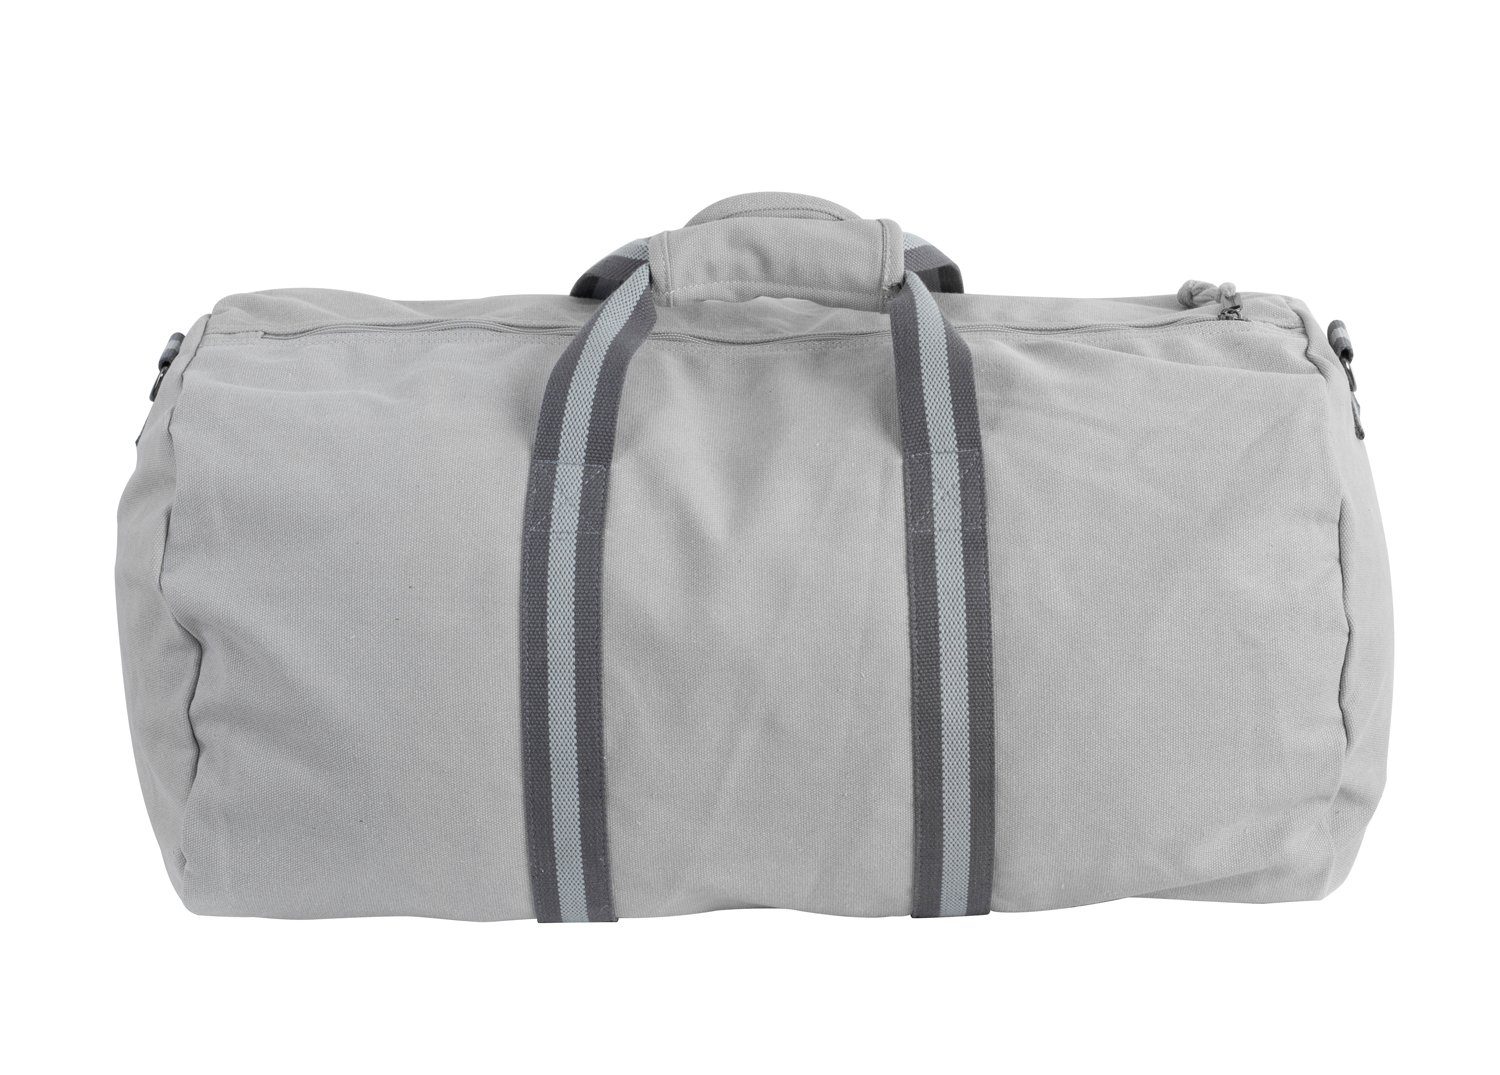 Manufaktur13 Sporttasche Canvas Bag, 45L Sporttasche, Reisetasche, Bag Asphalt - Fassungsvermögen Duffel Barrel